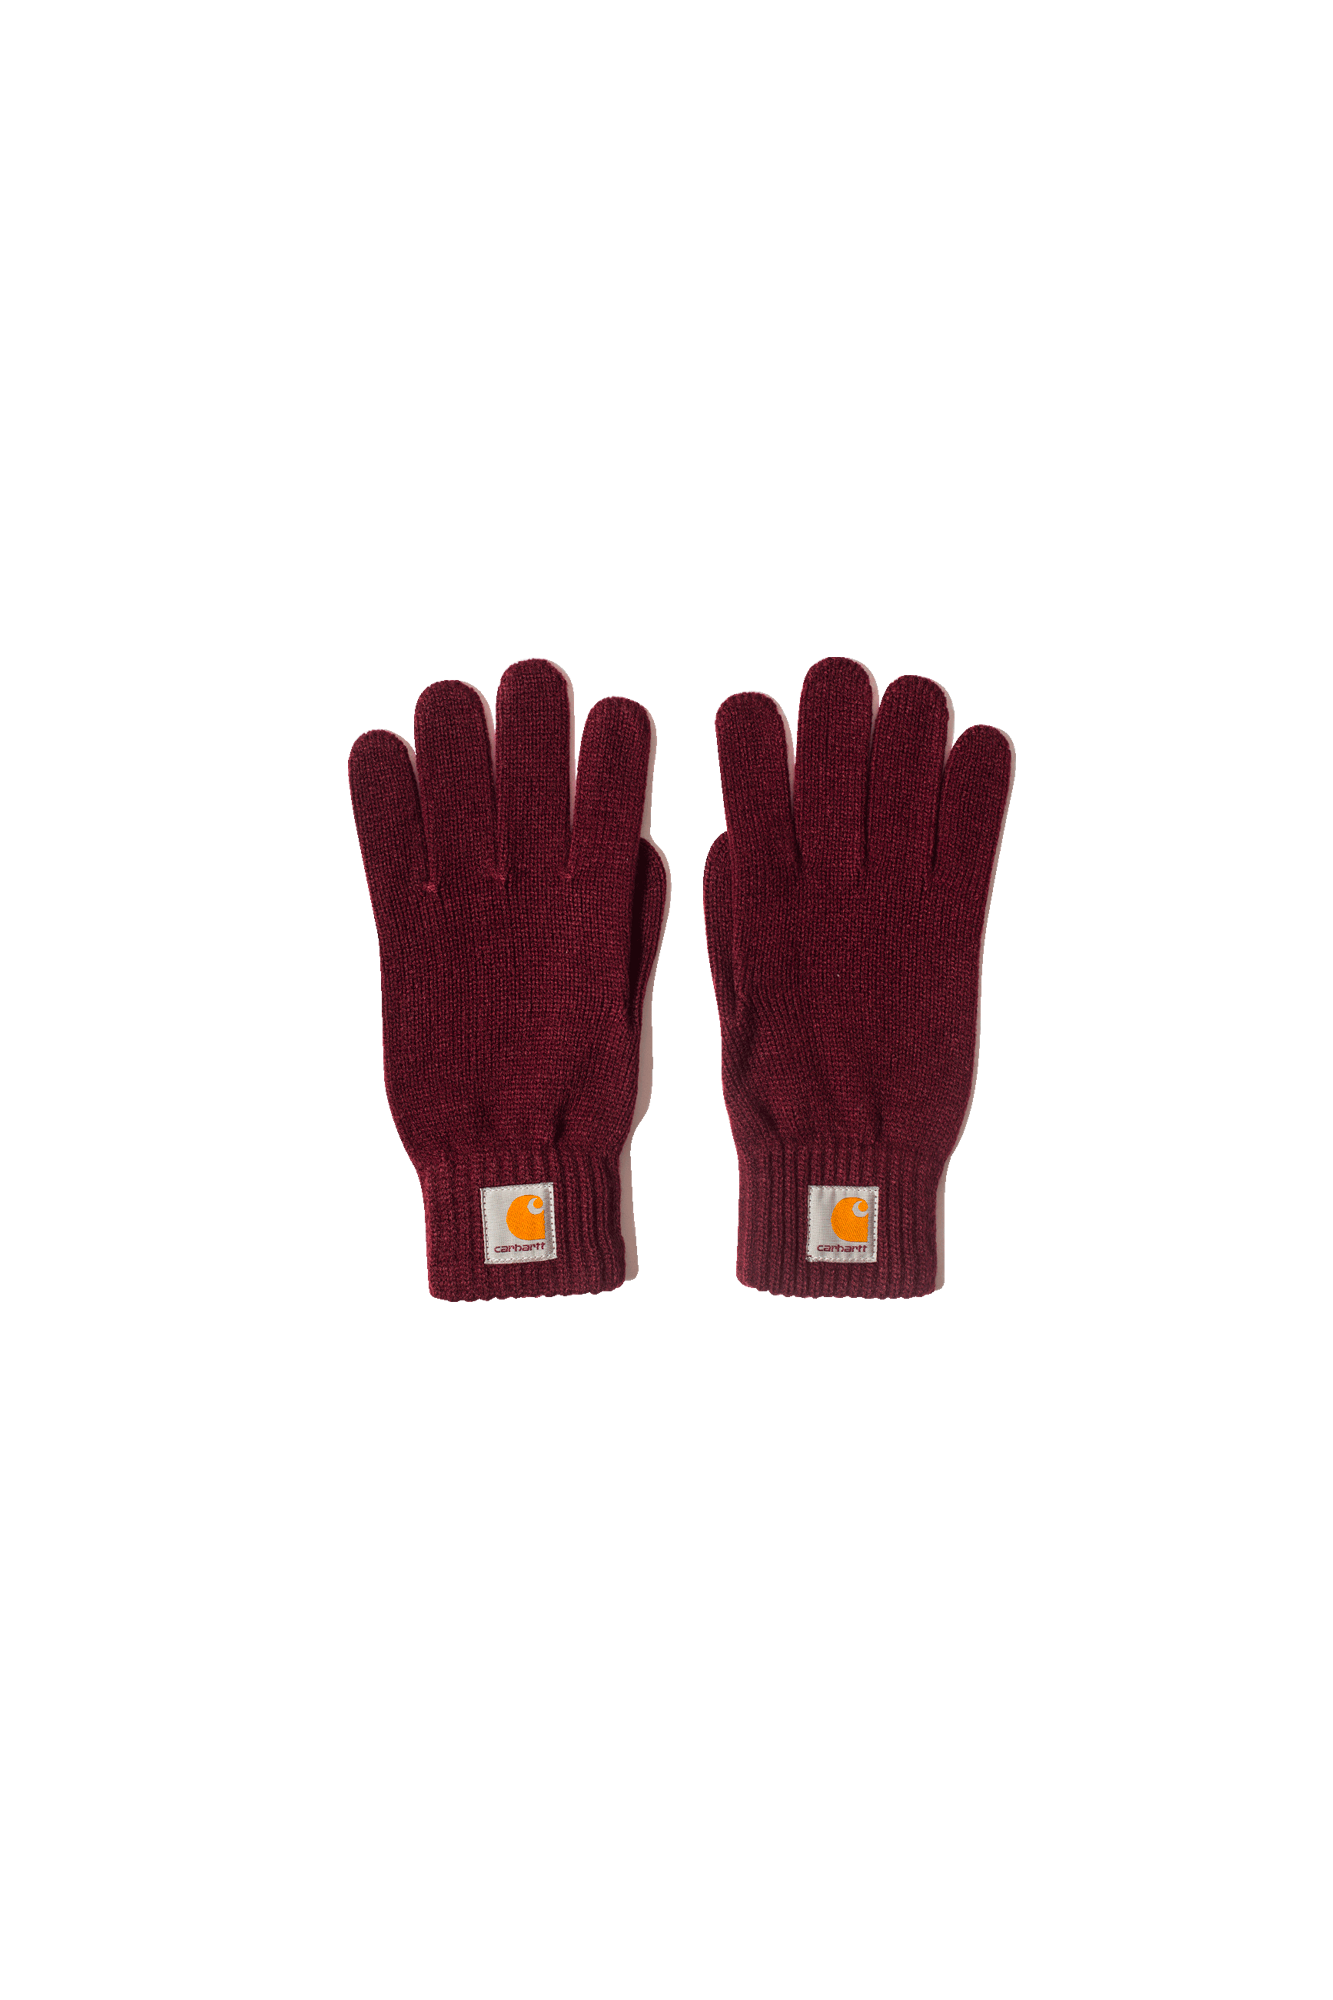 Carhartt Gloves Watch Gloves Red I021756#000#BRDX#S - One Block Down